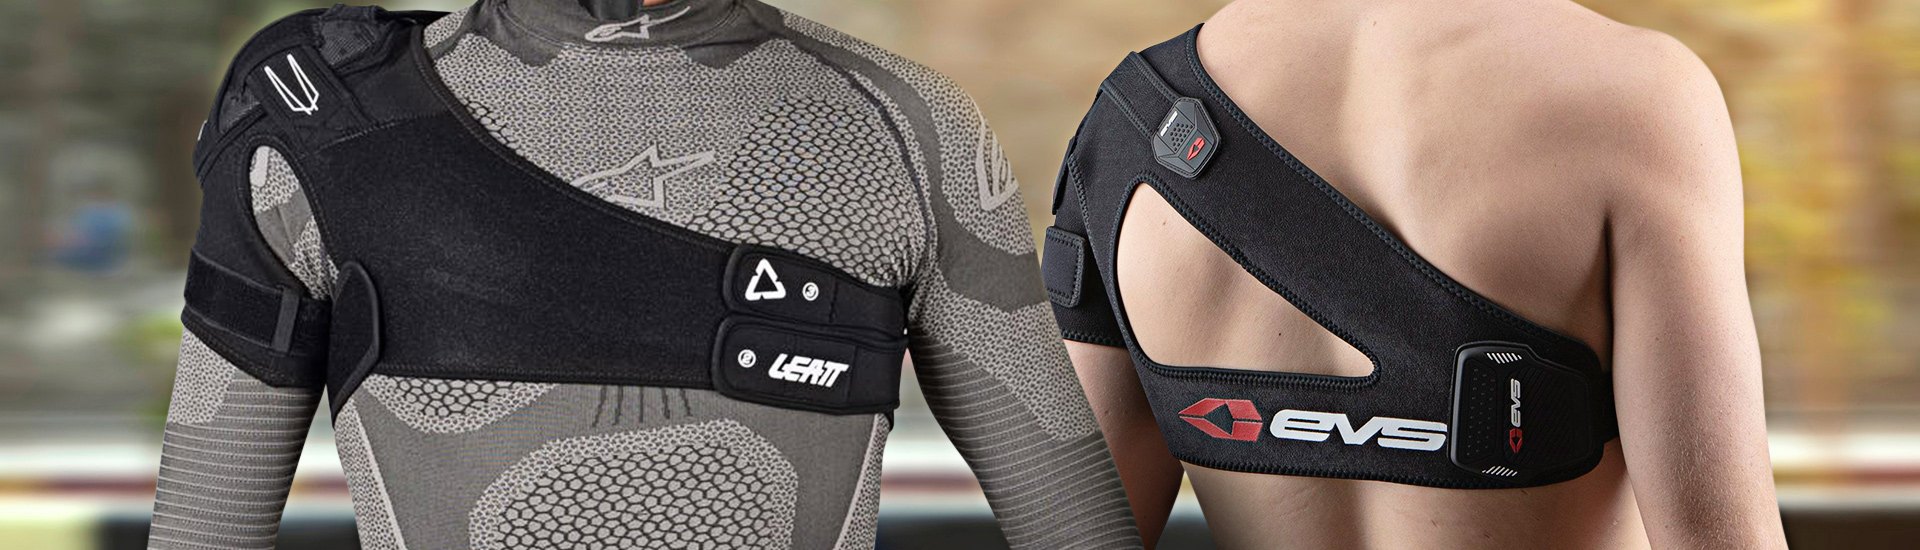 Dual-Sport Bike Shoulder Protection  Braces, Armor, Protectors, Pads 